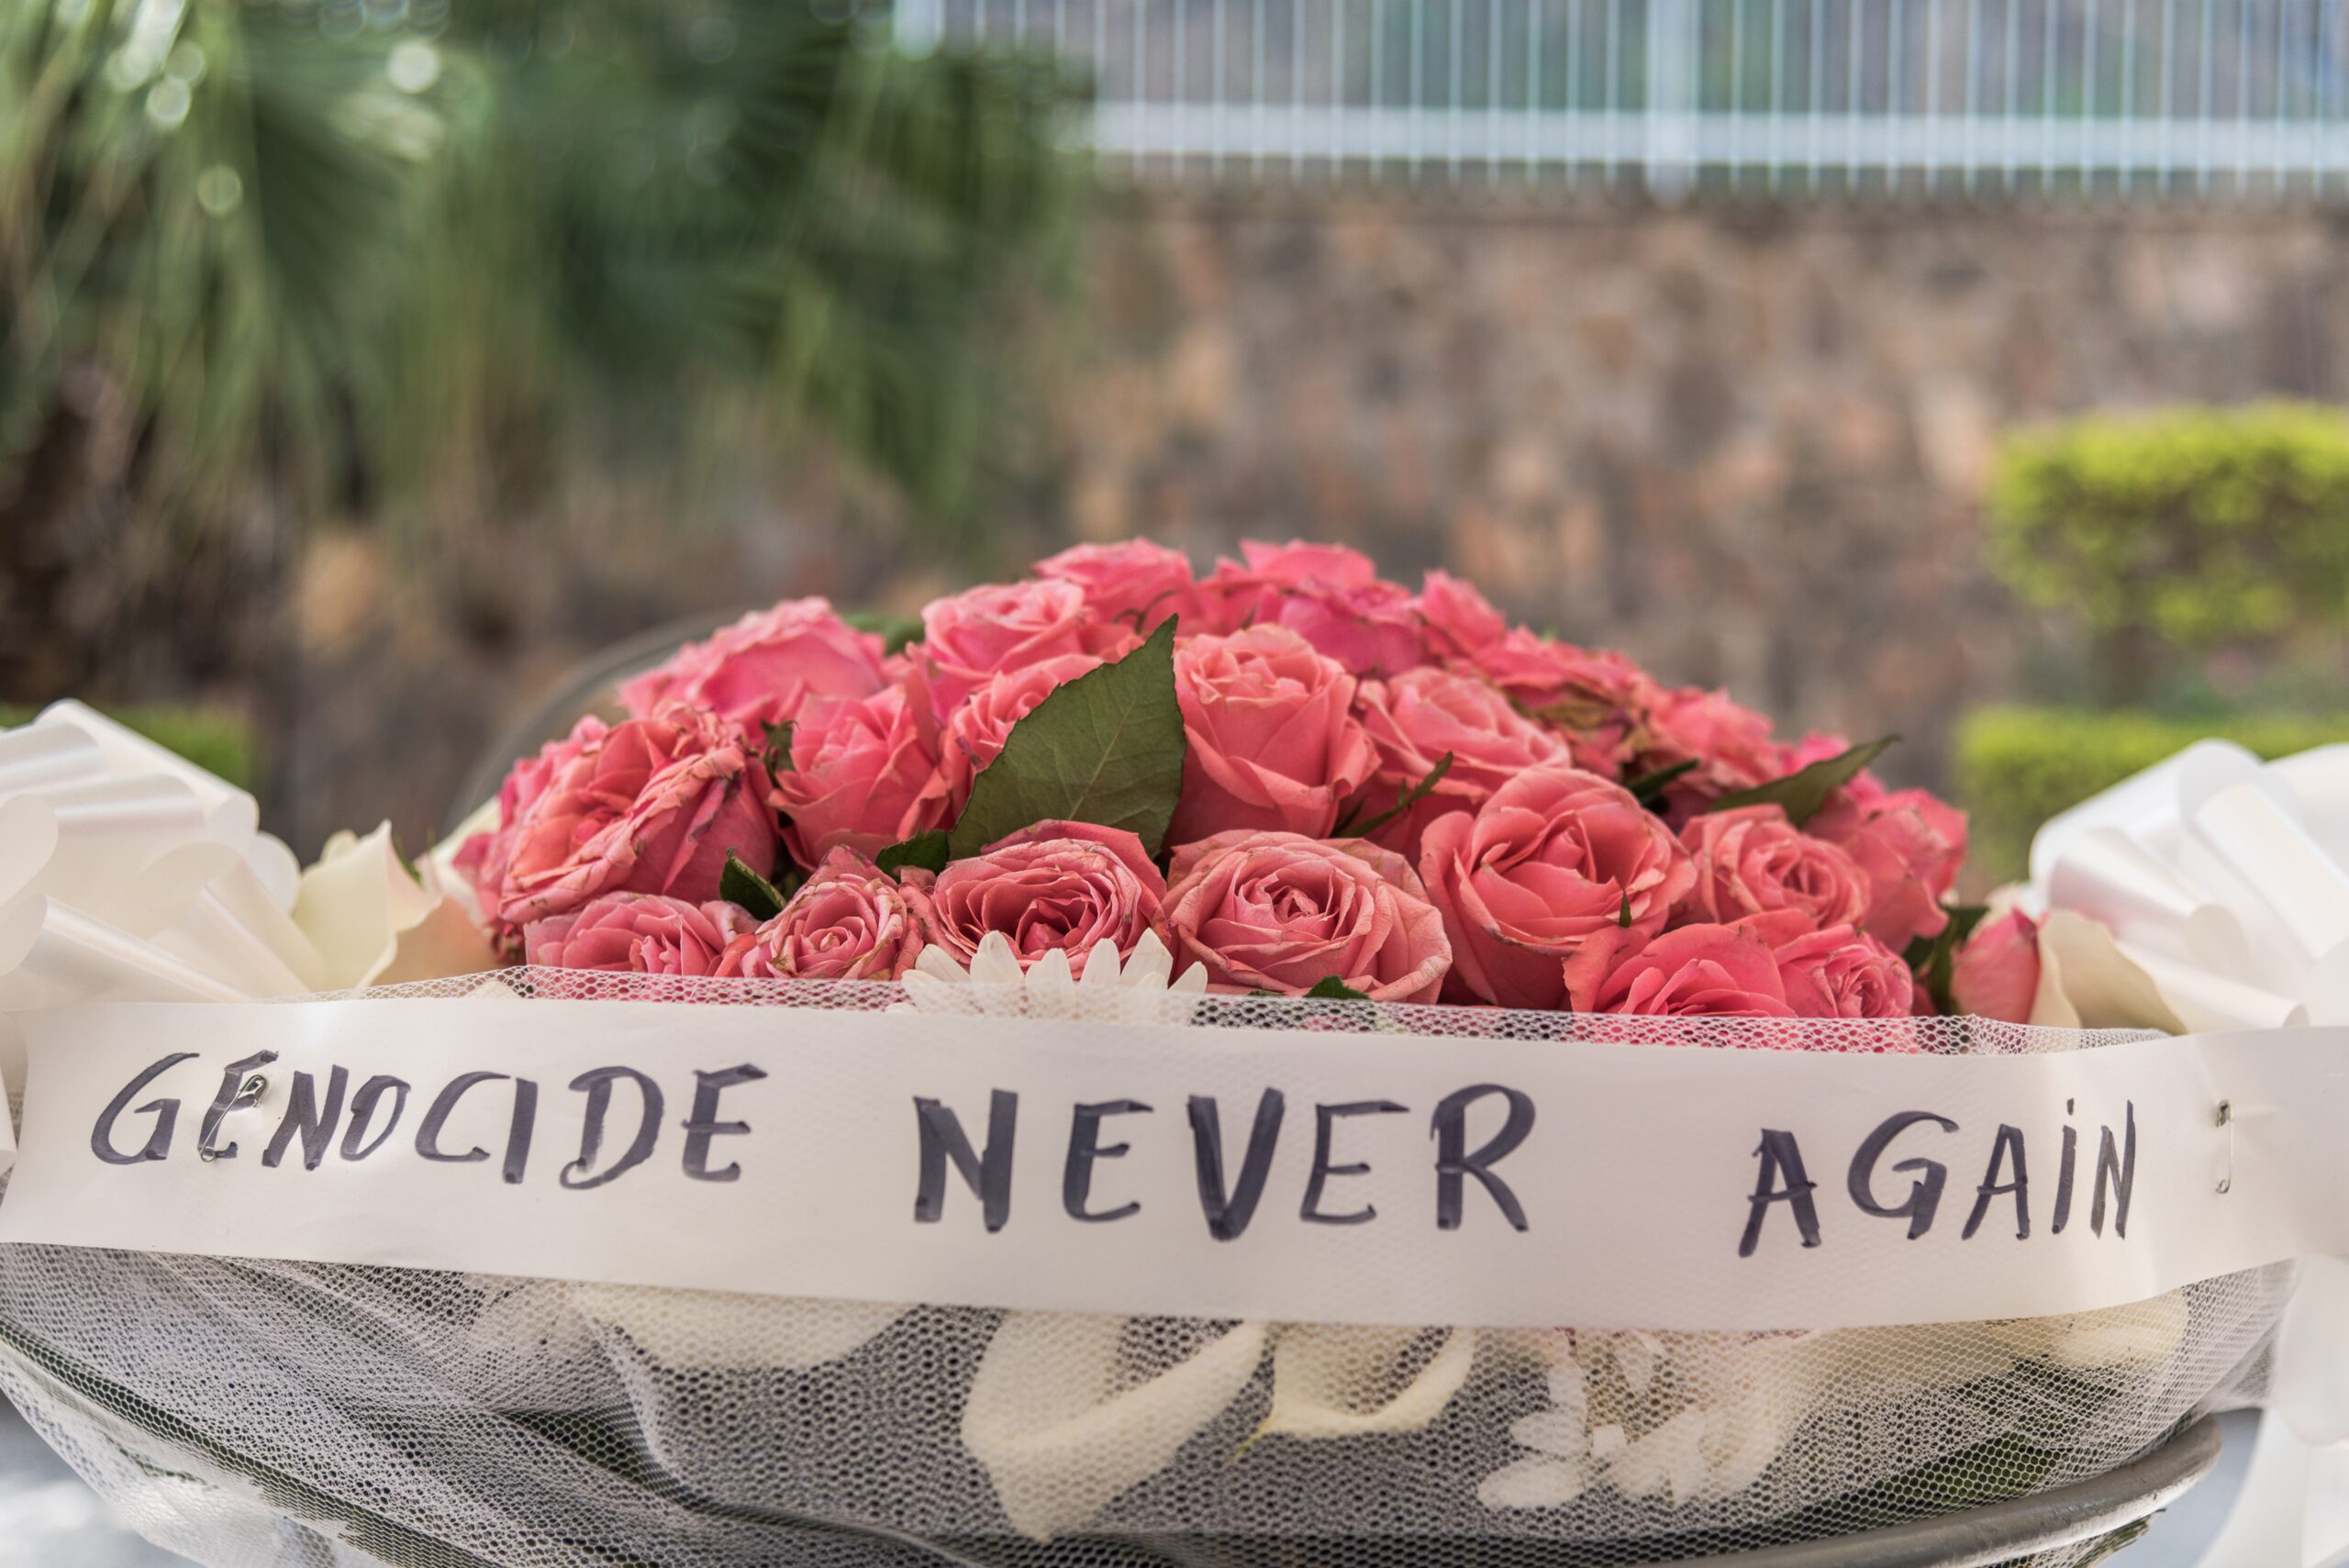 Bloemen met de tekst 'Genocide never Again'